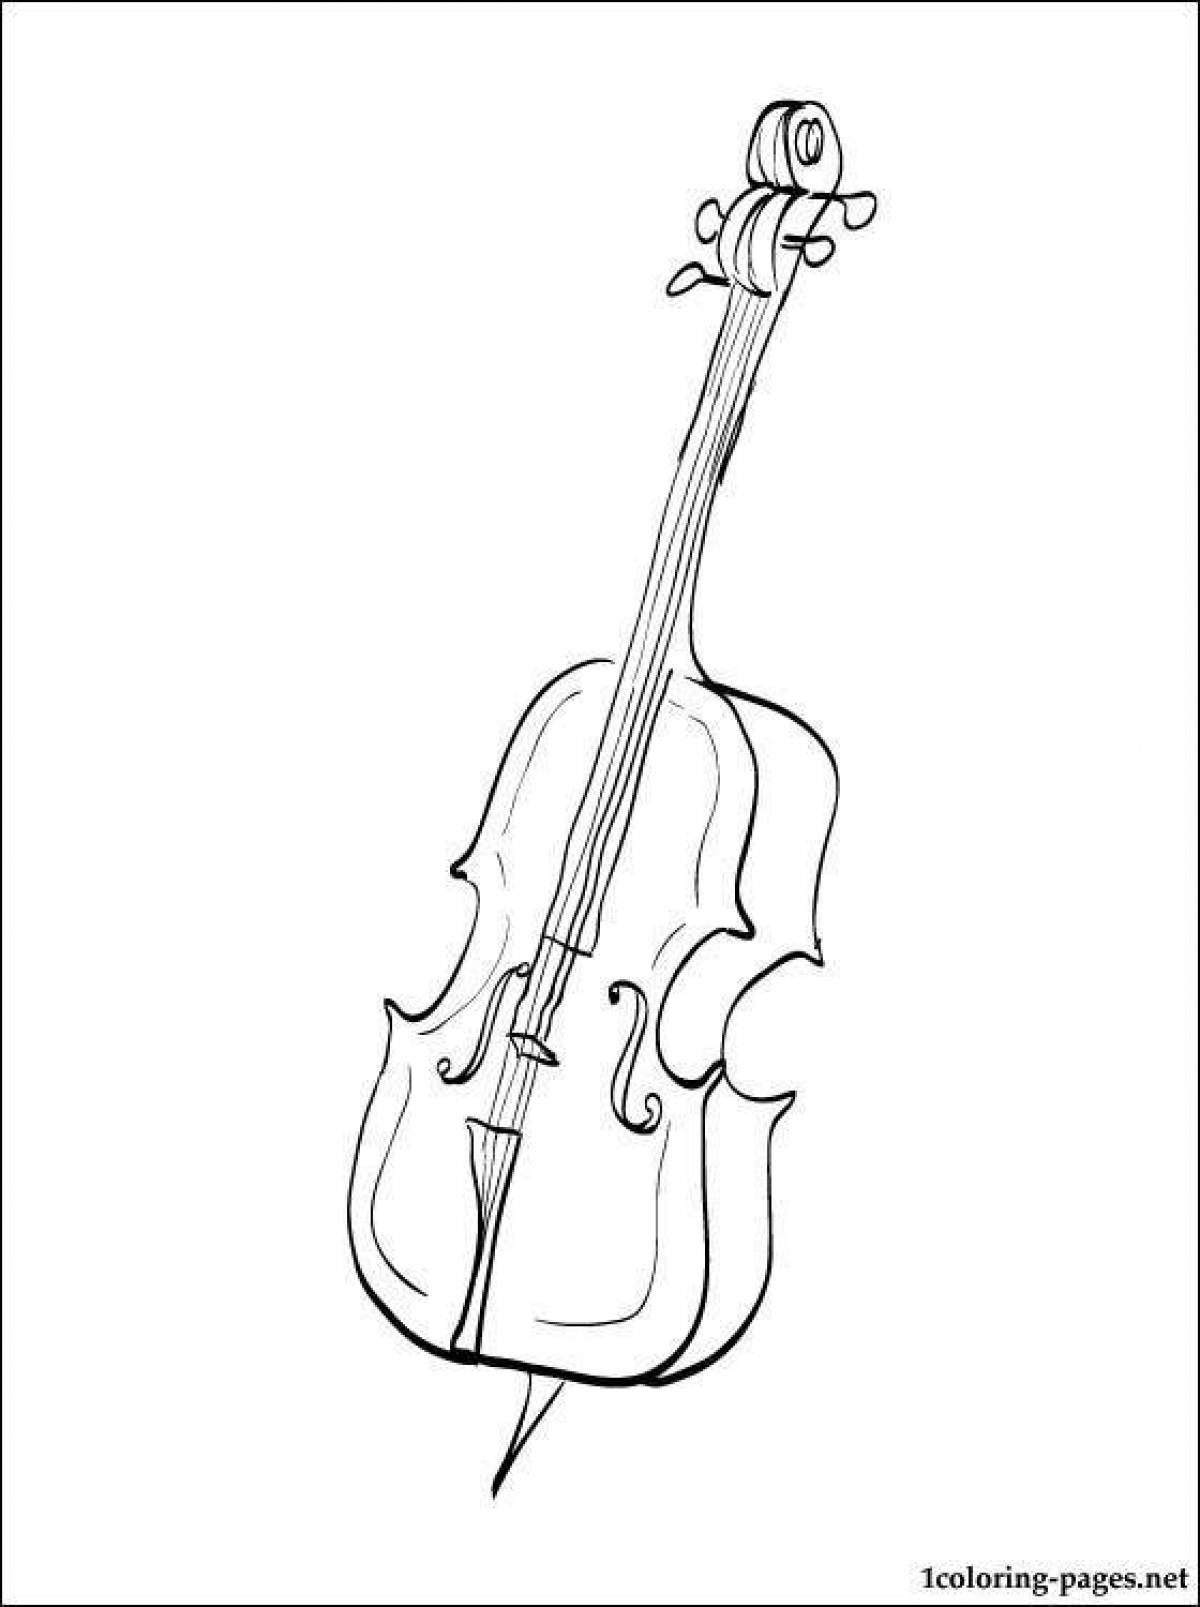 Великолепная страница раскраски виолончели